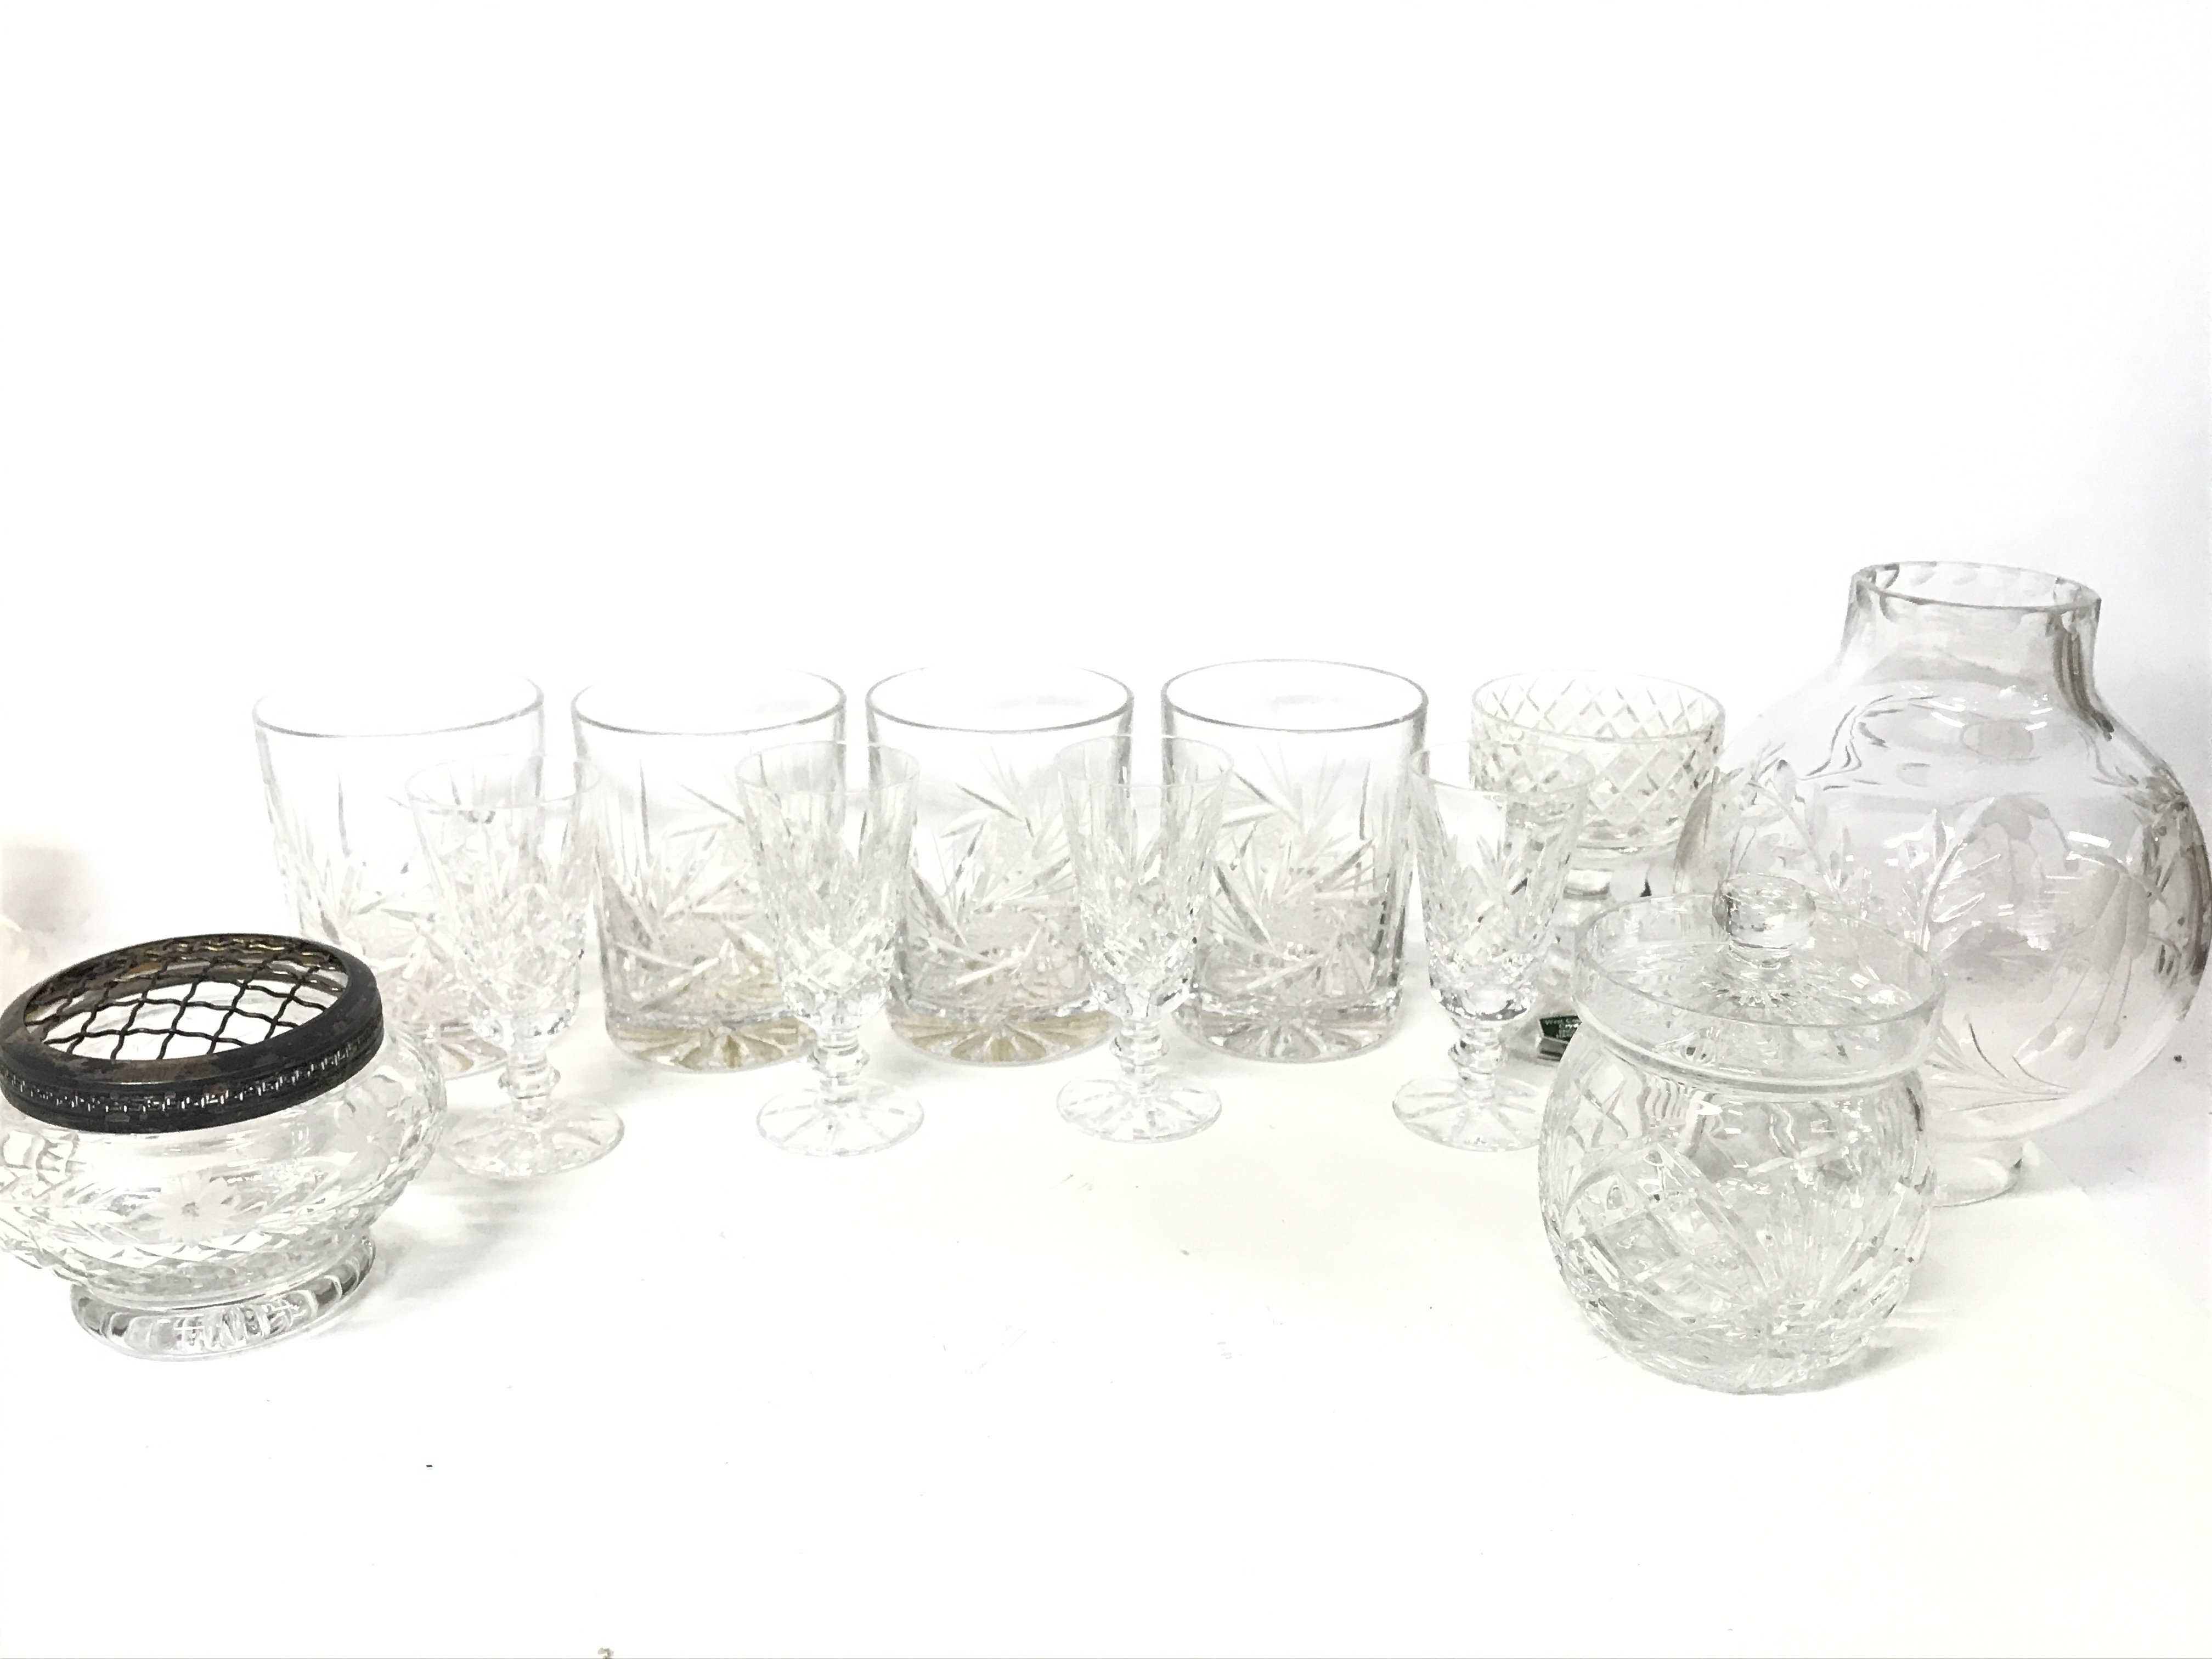 A set of cut glasses, a lidded glass jar, clear gl